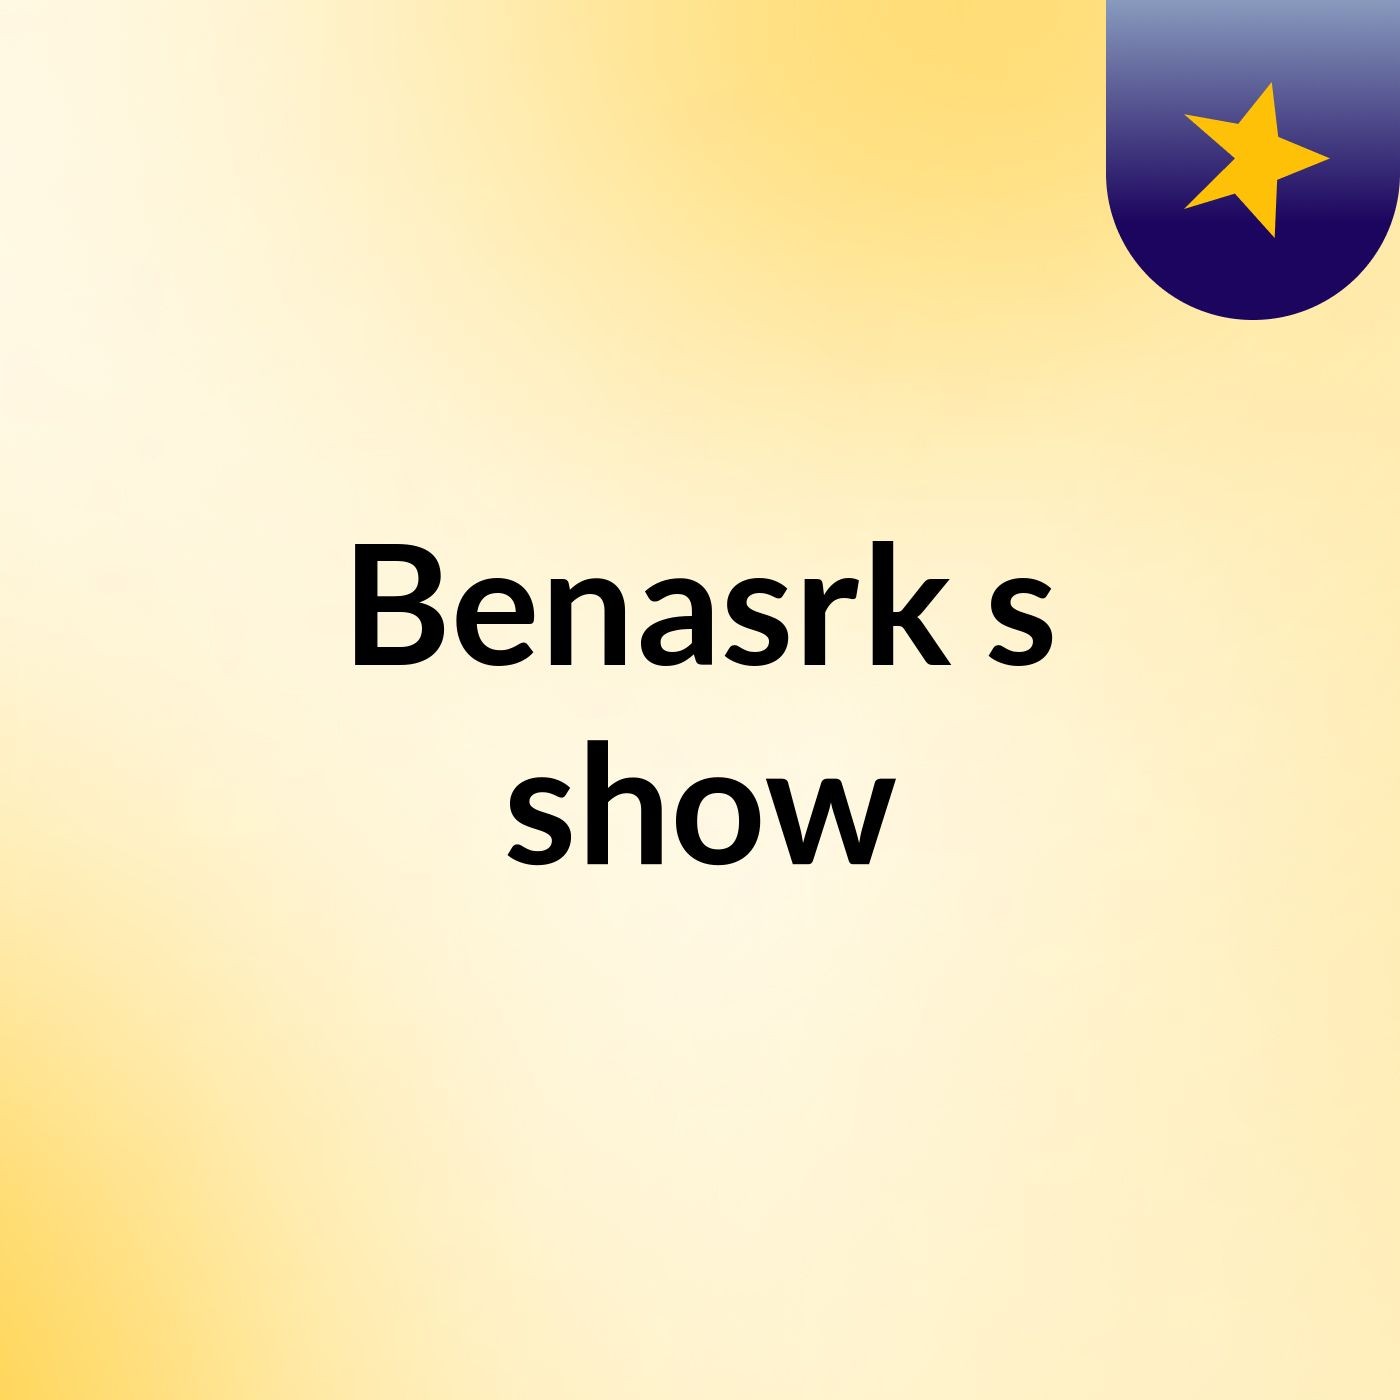 Benasrk's show